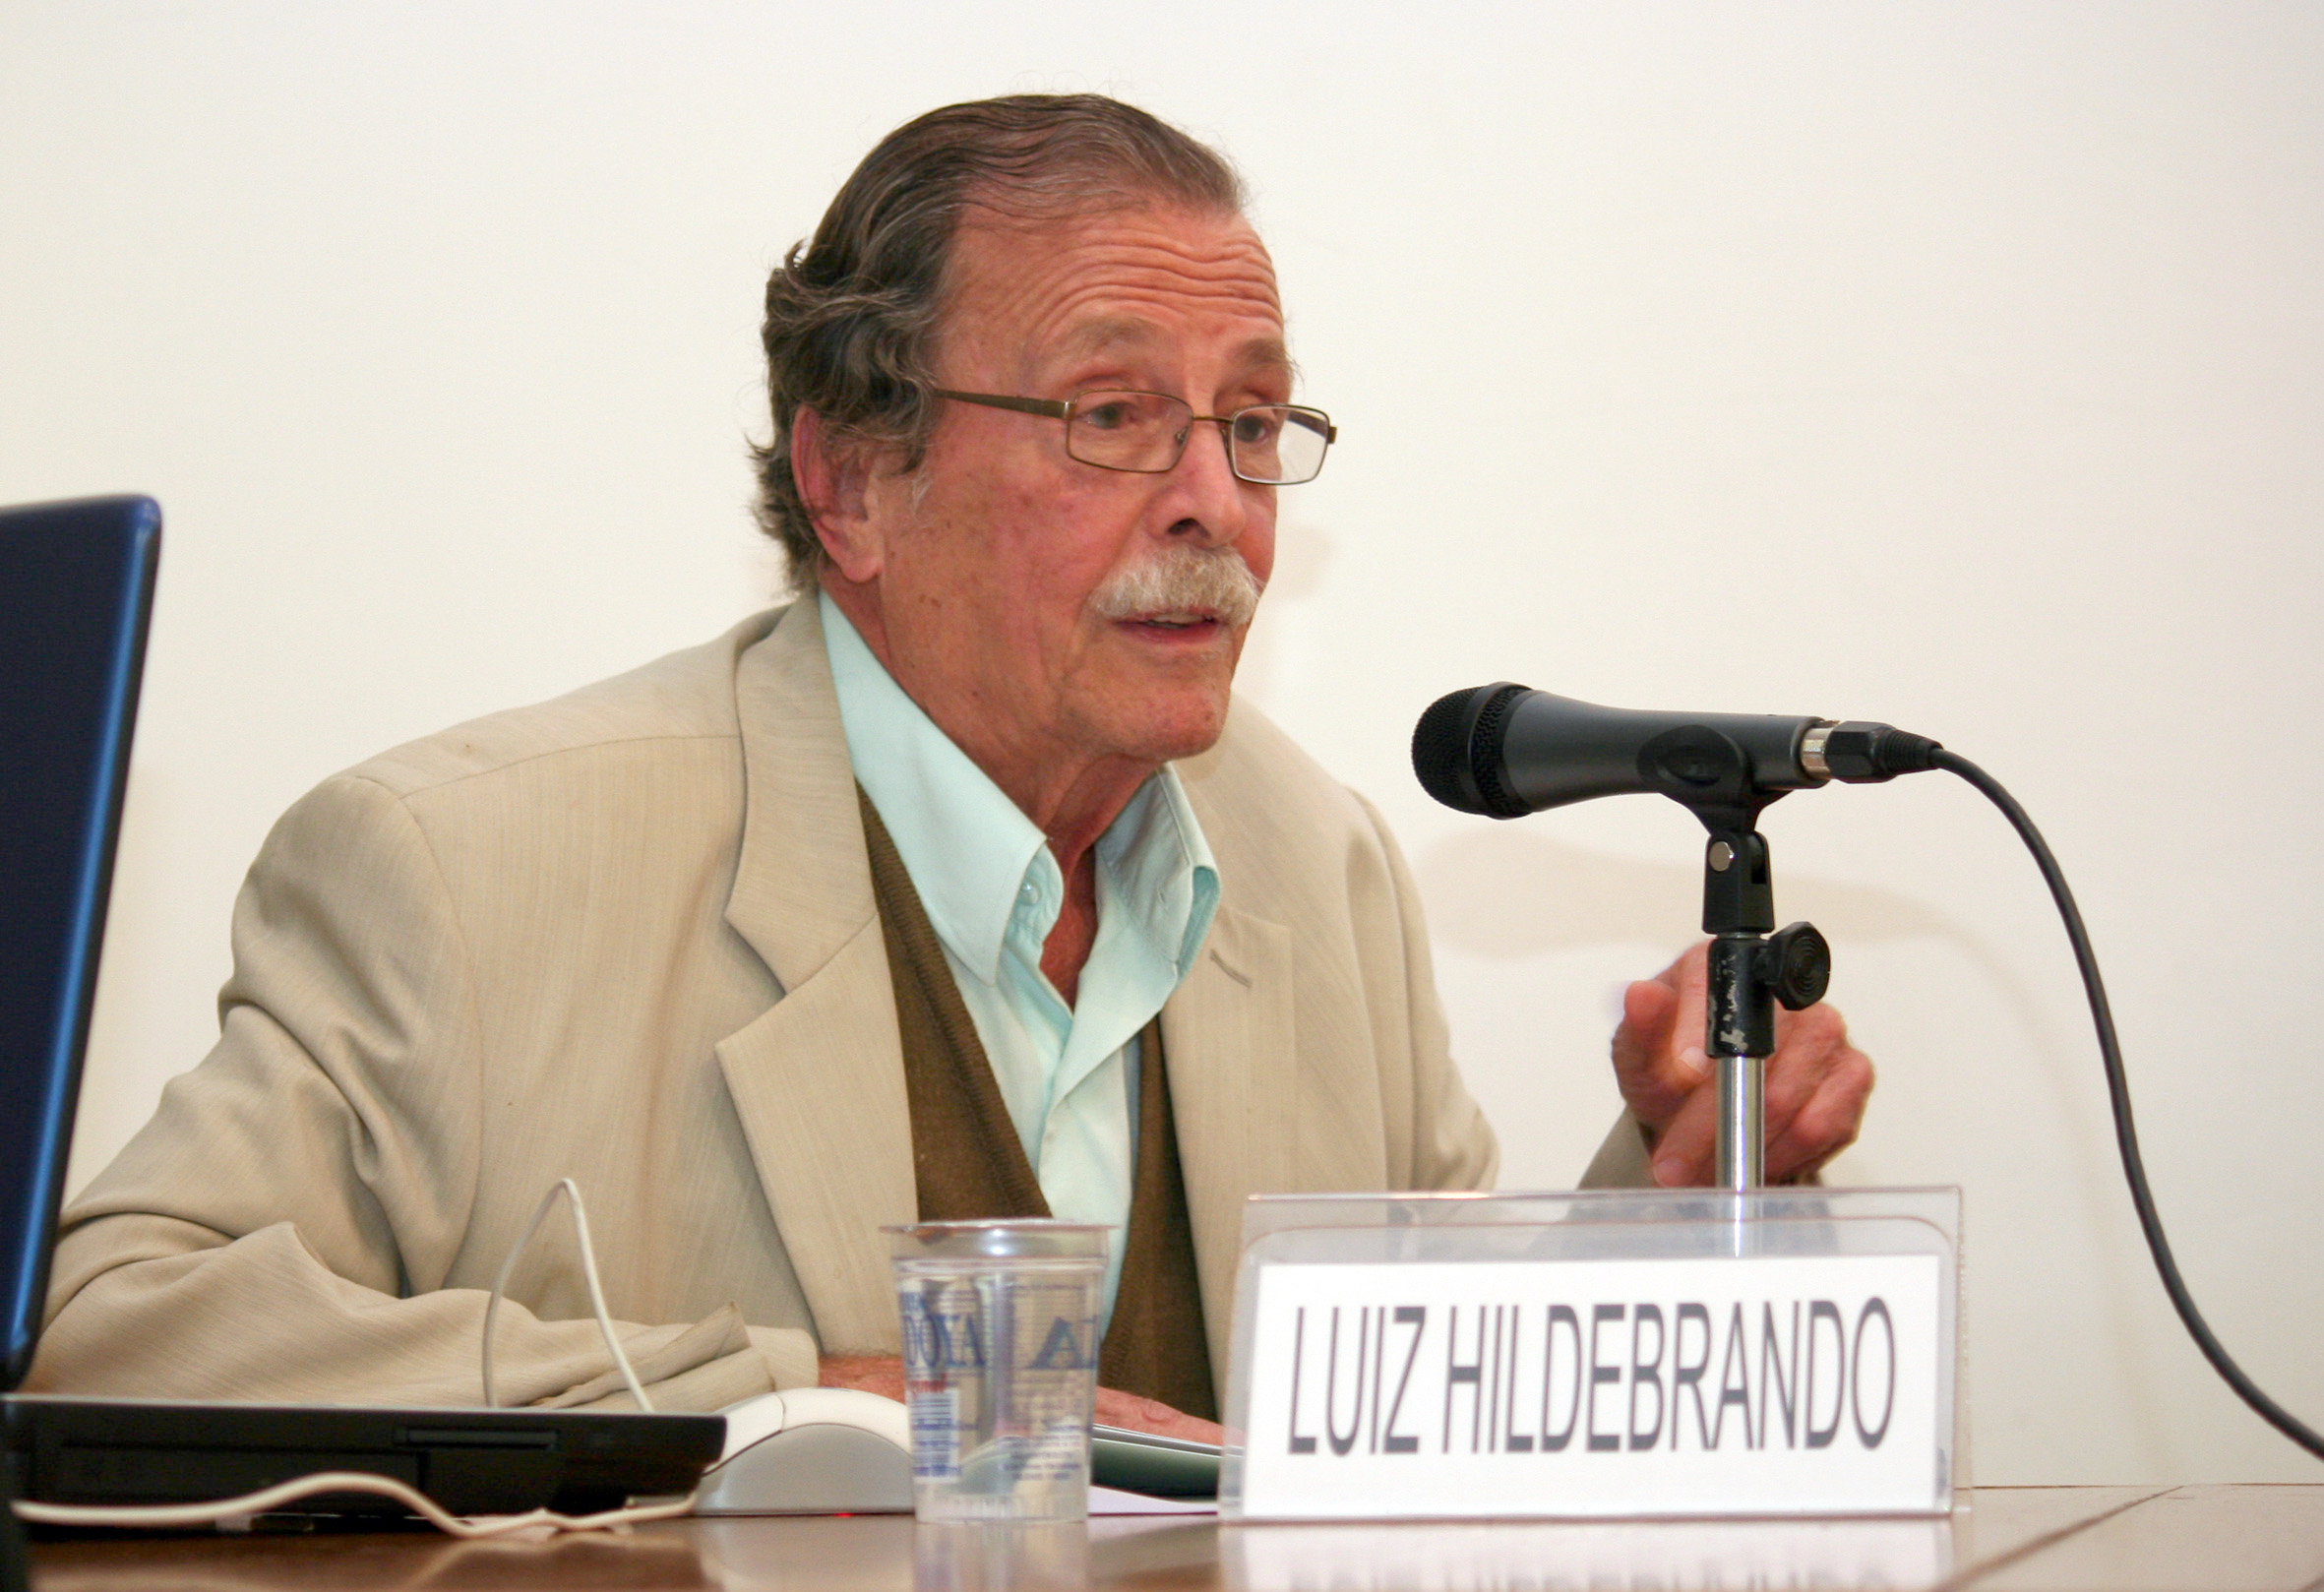 Luiz Hildebrando Pereira da Silva